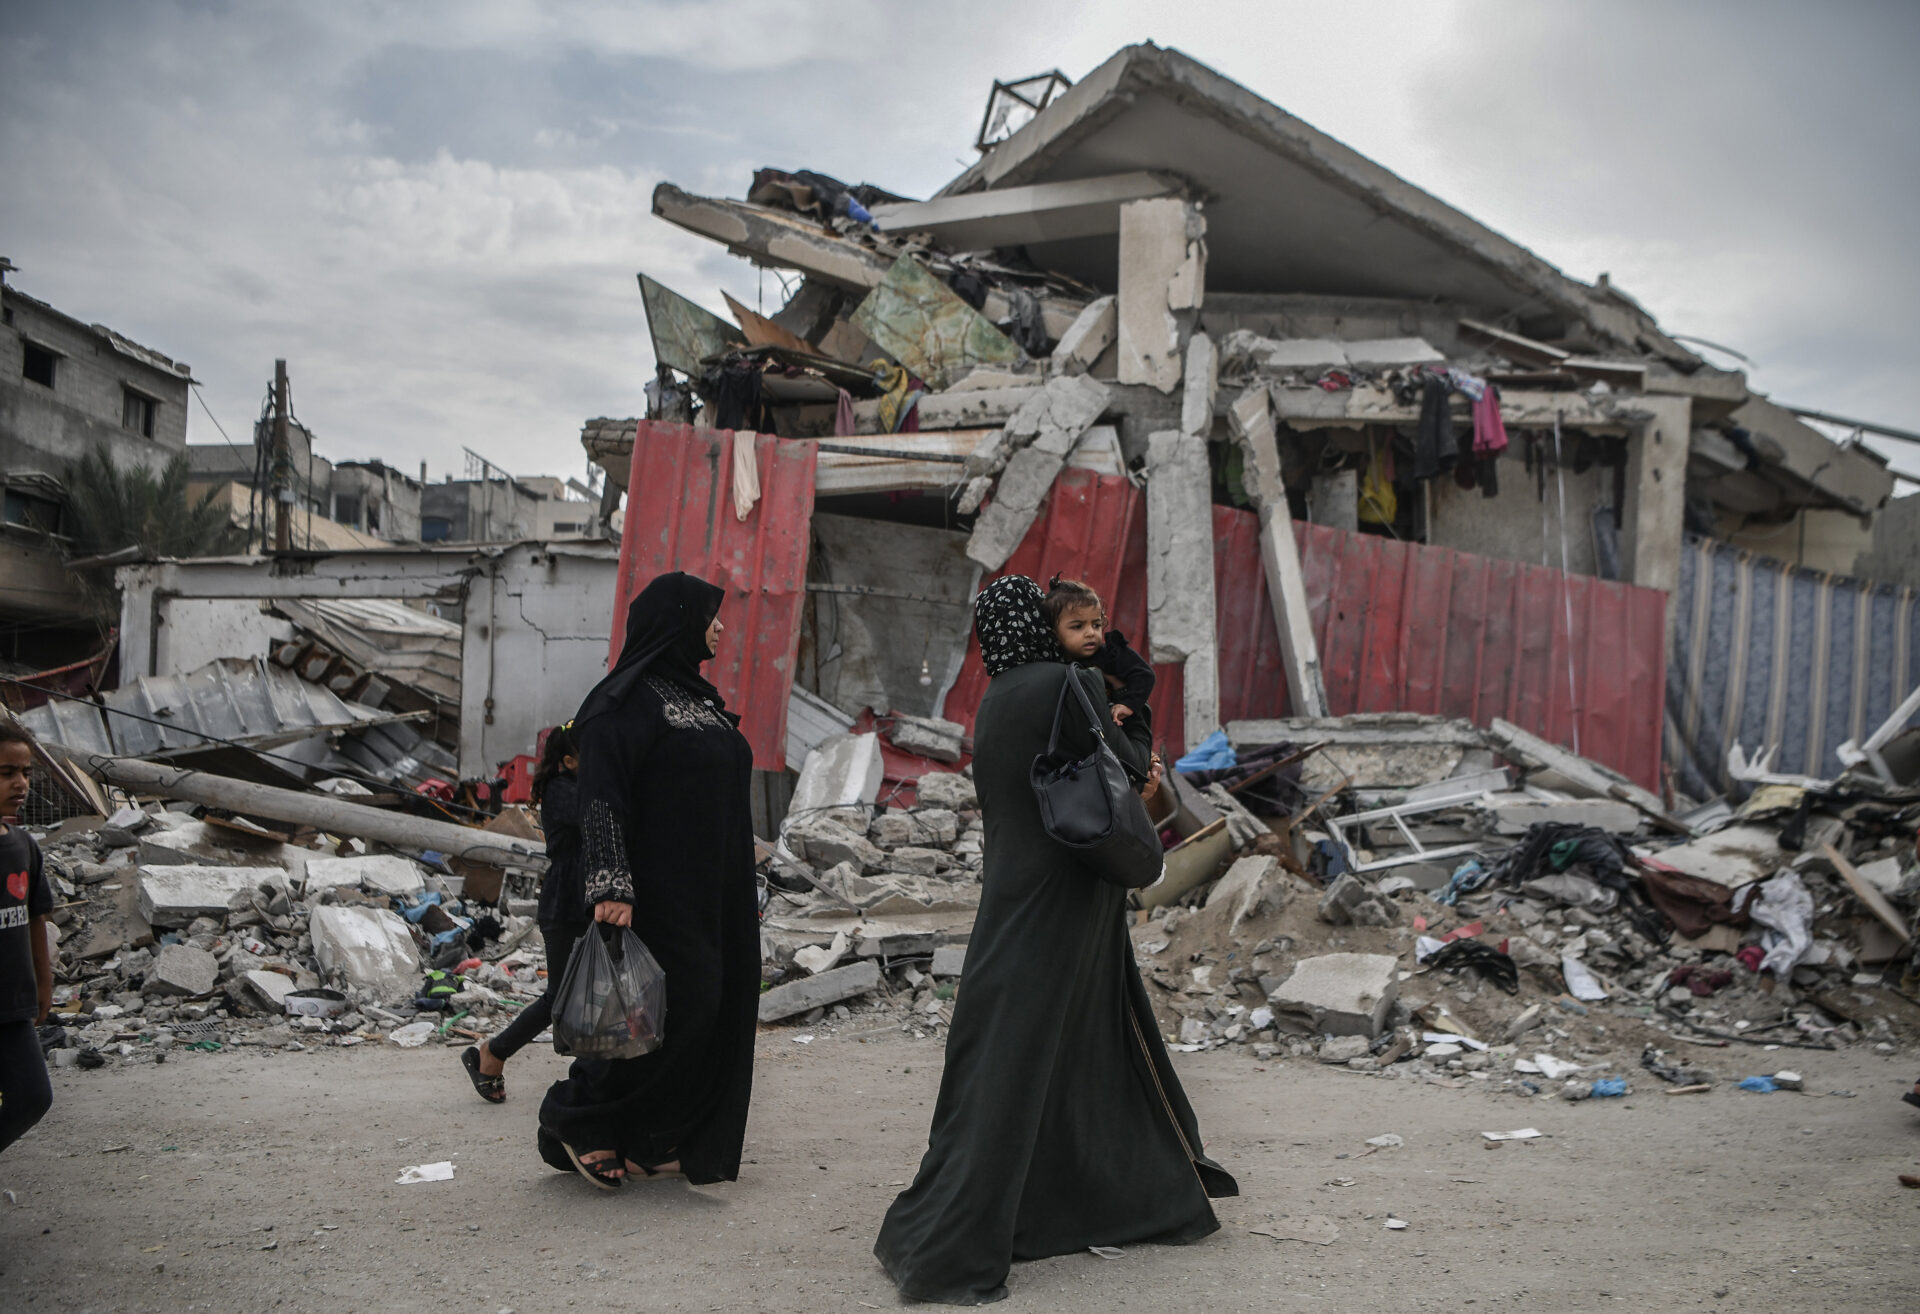 El 97 % de la población en países árabes sufre estrés por la guerra Gaza